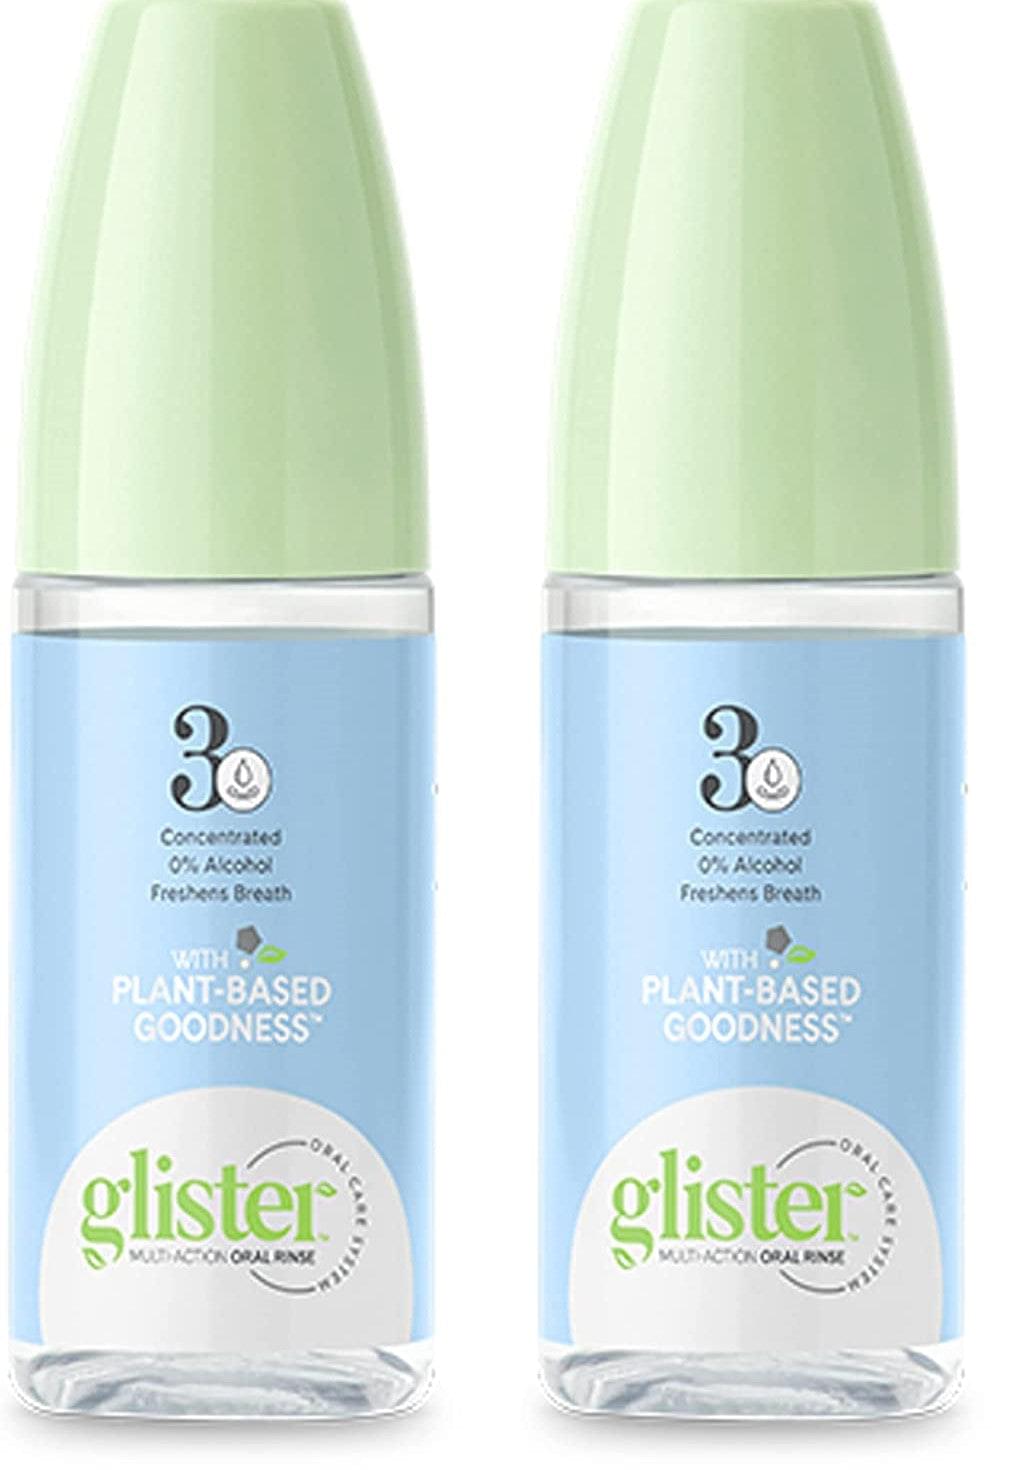 2 x GLISTER ® Multi-action Oral Rinse 2 fl. oz